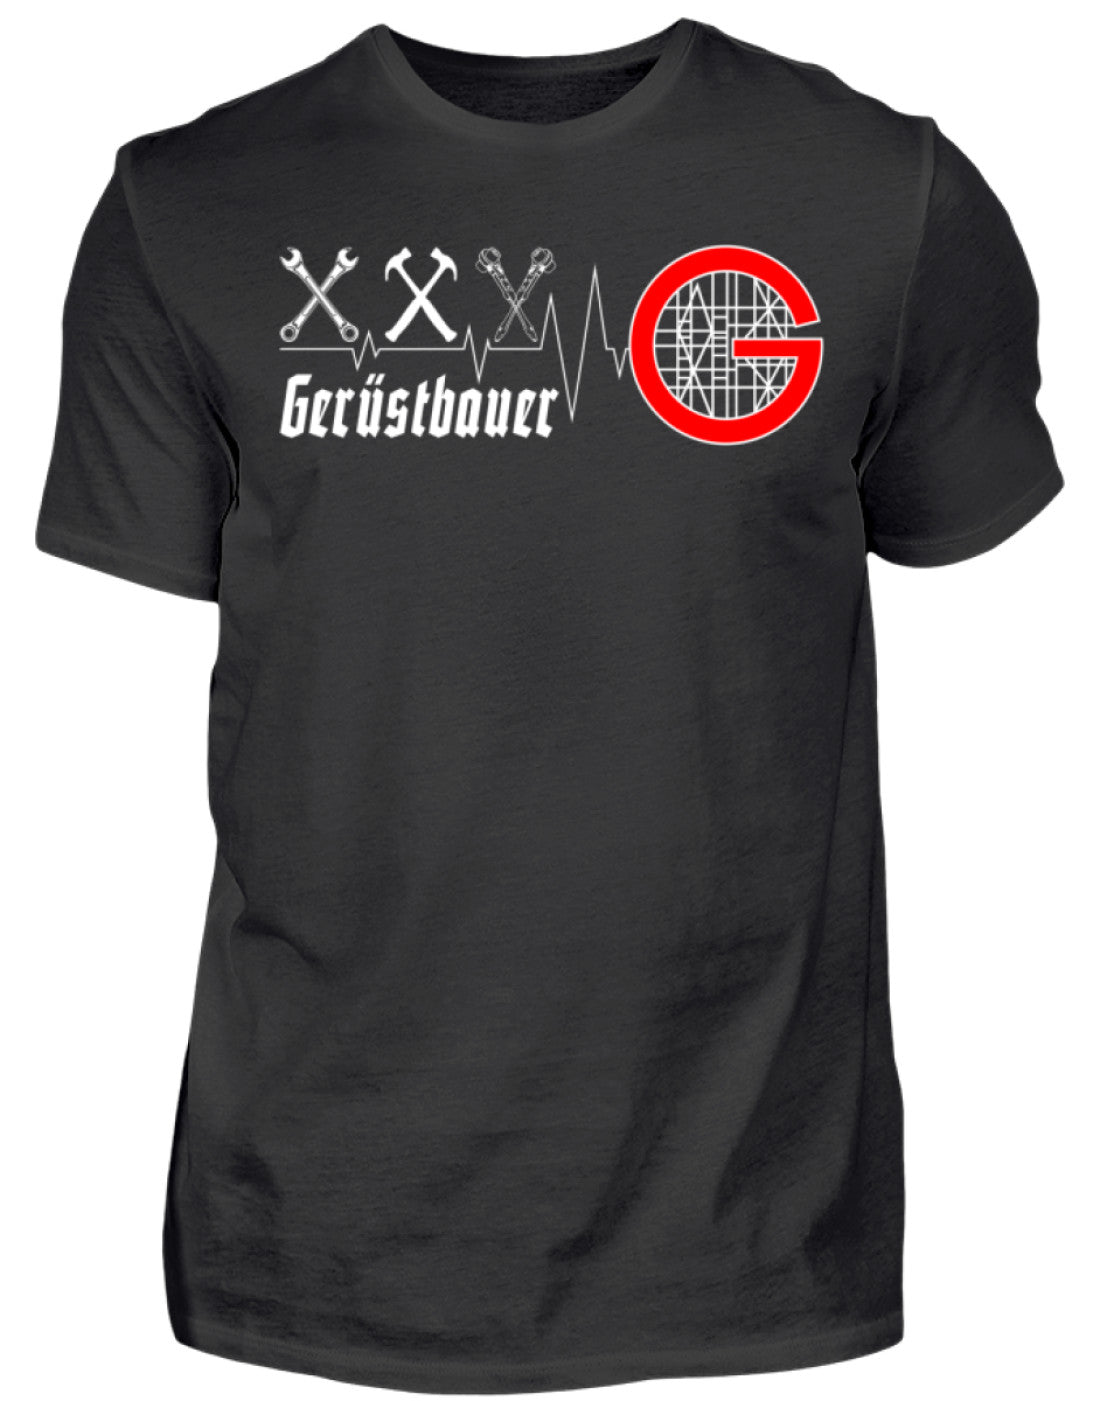 Gerüstbauer Shirt / Flatline €21.95 Gerüstbauer - Shop >>